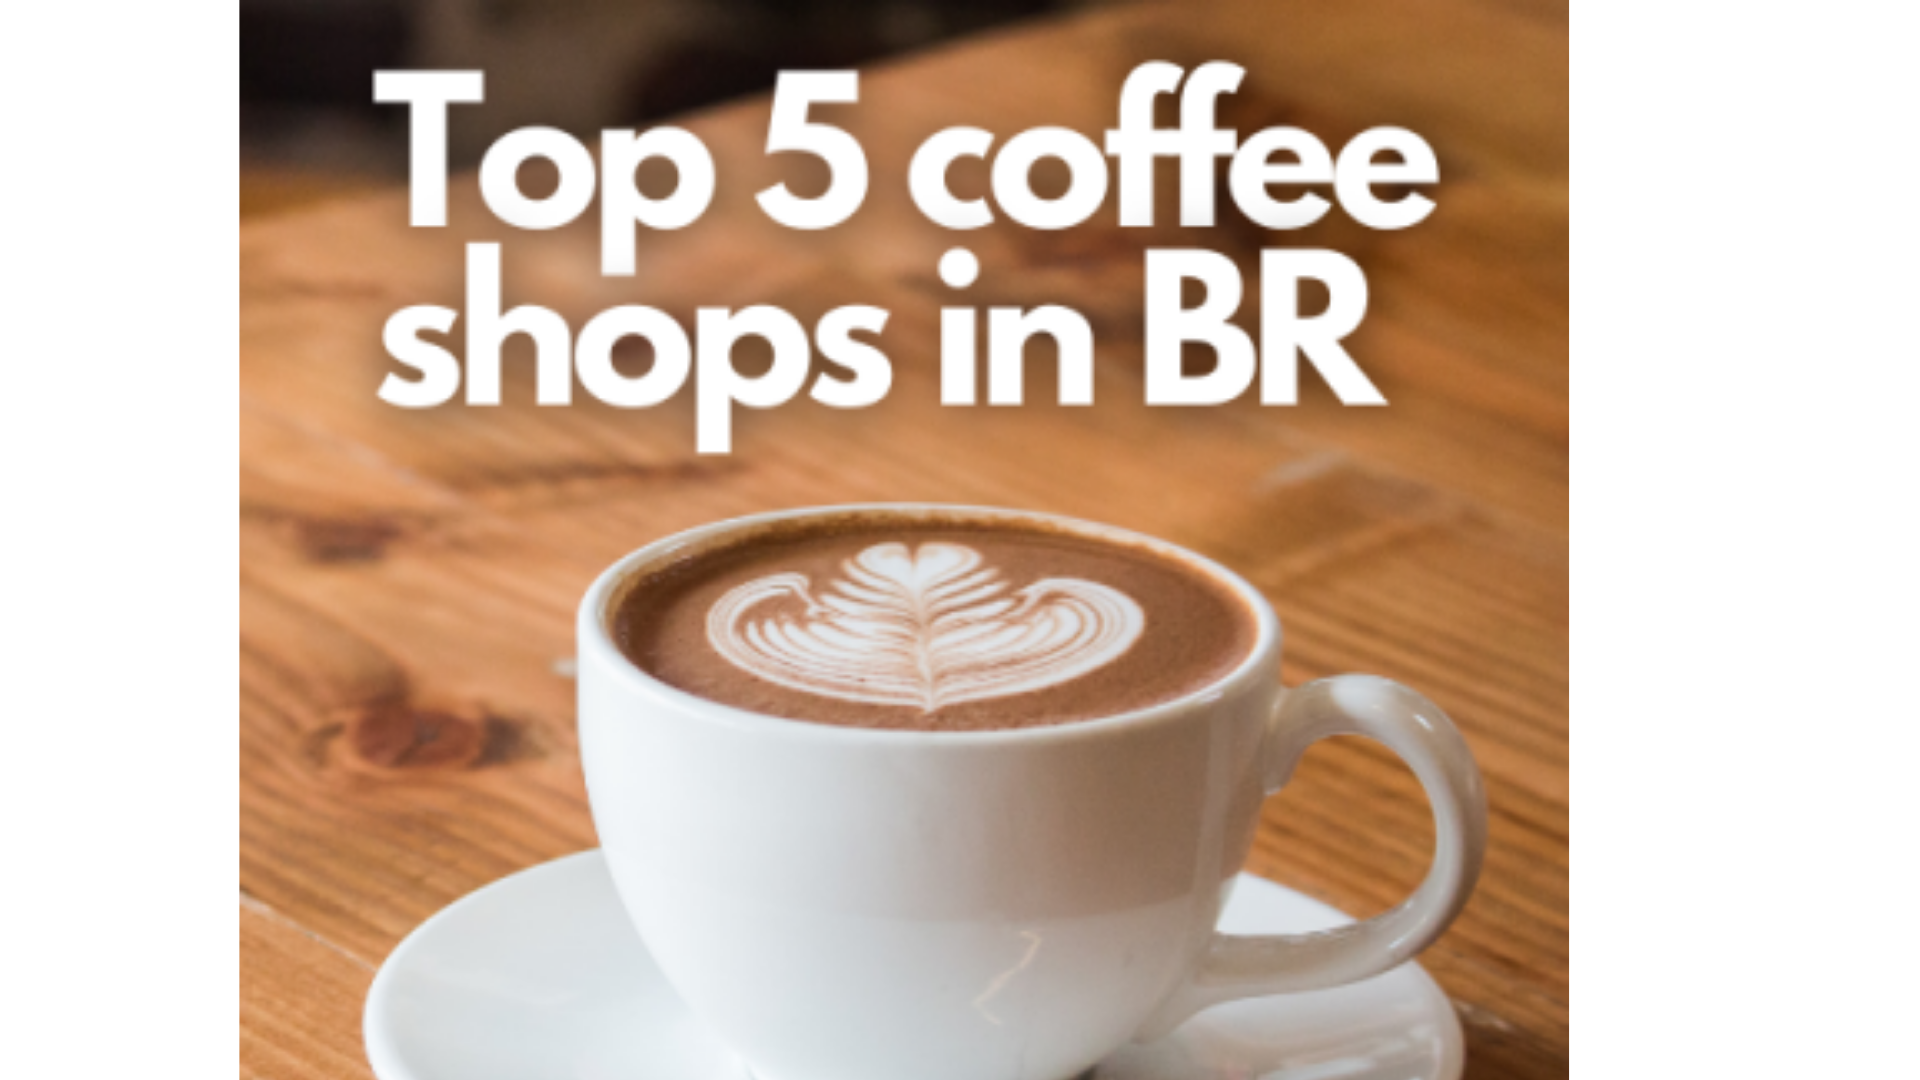 Best Coffee Shops in BR